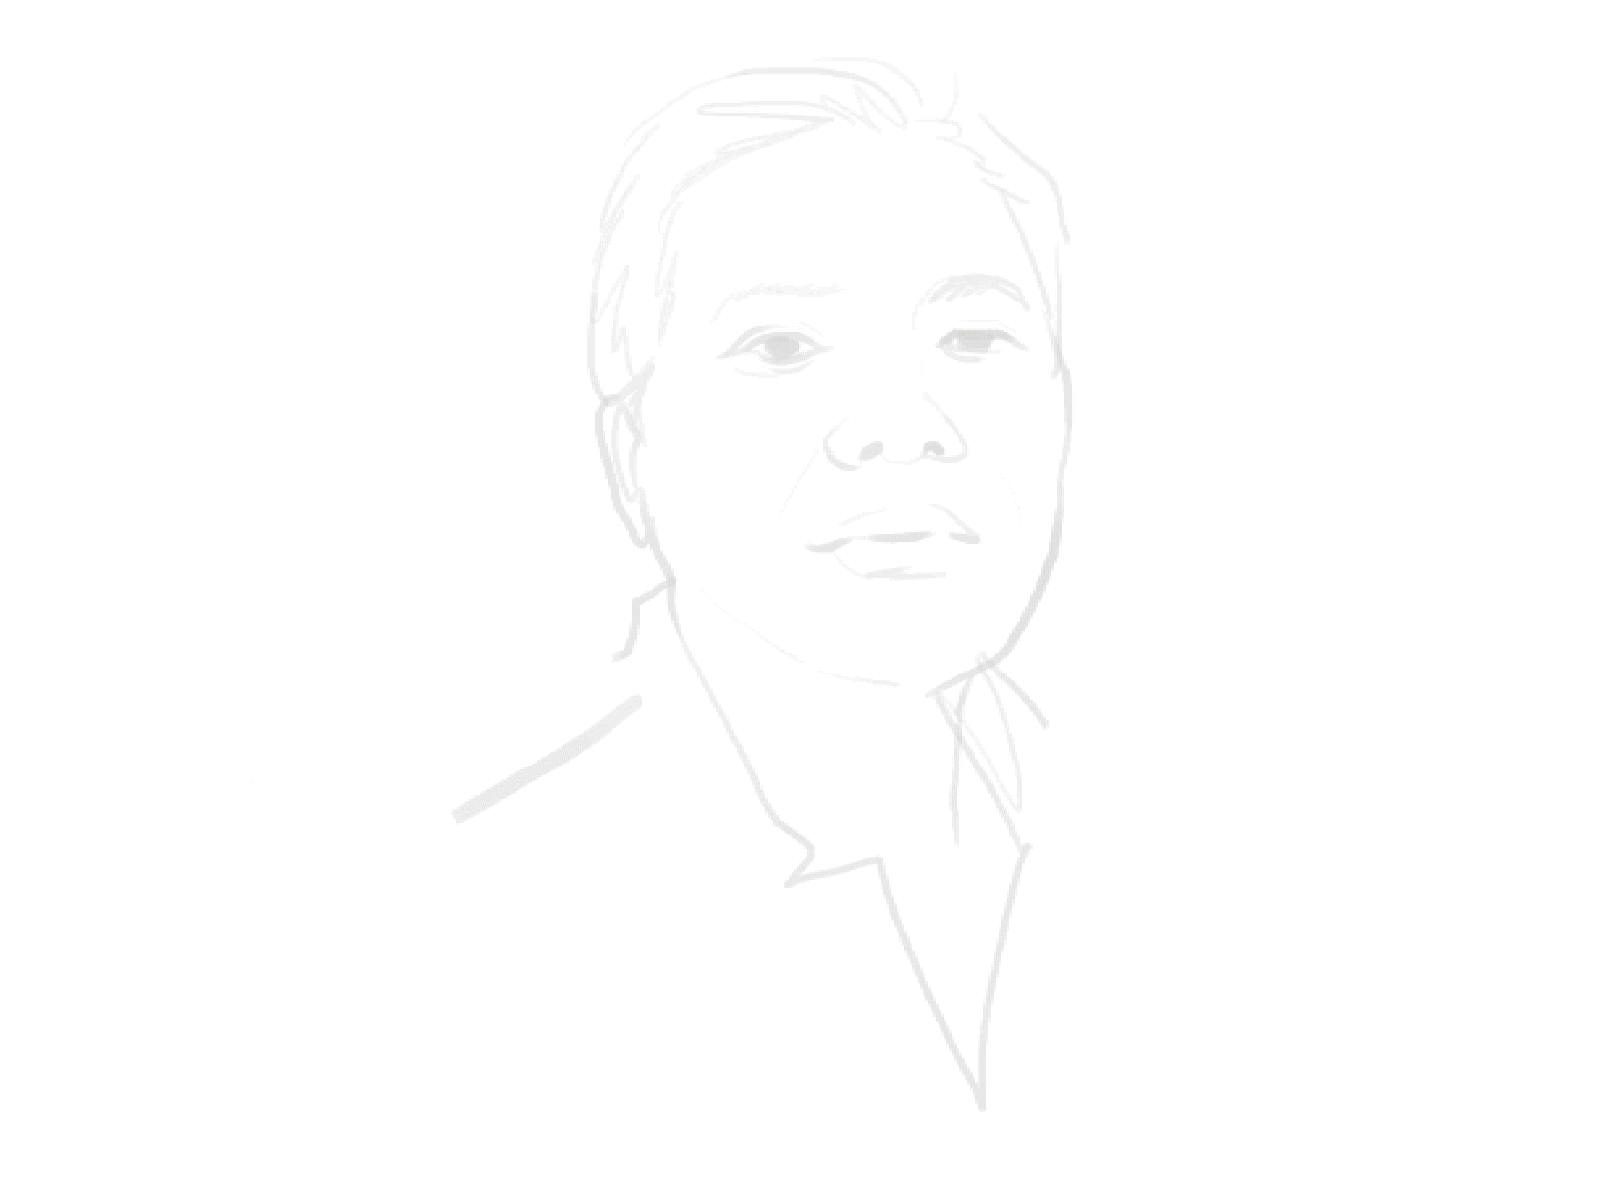 Portrait Commission Process digital drawing illustration portrait